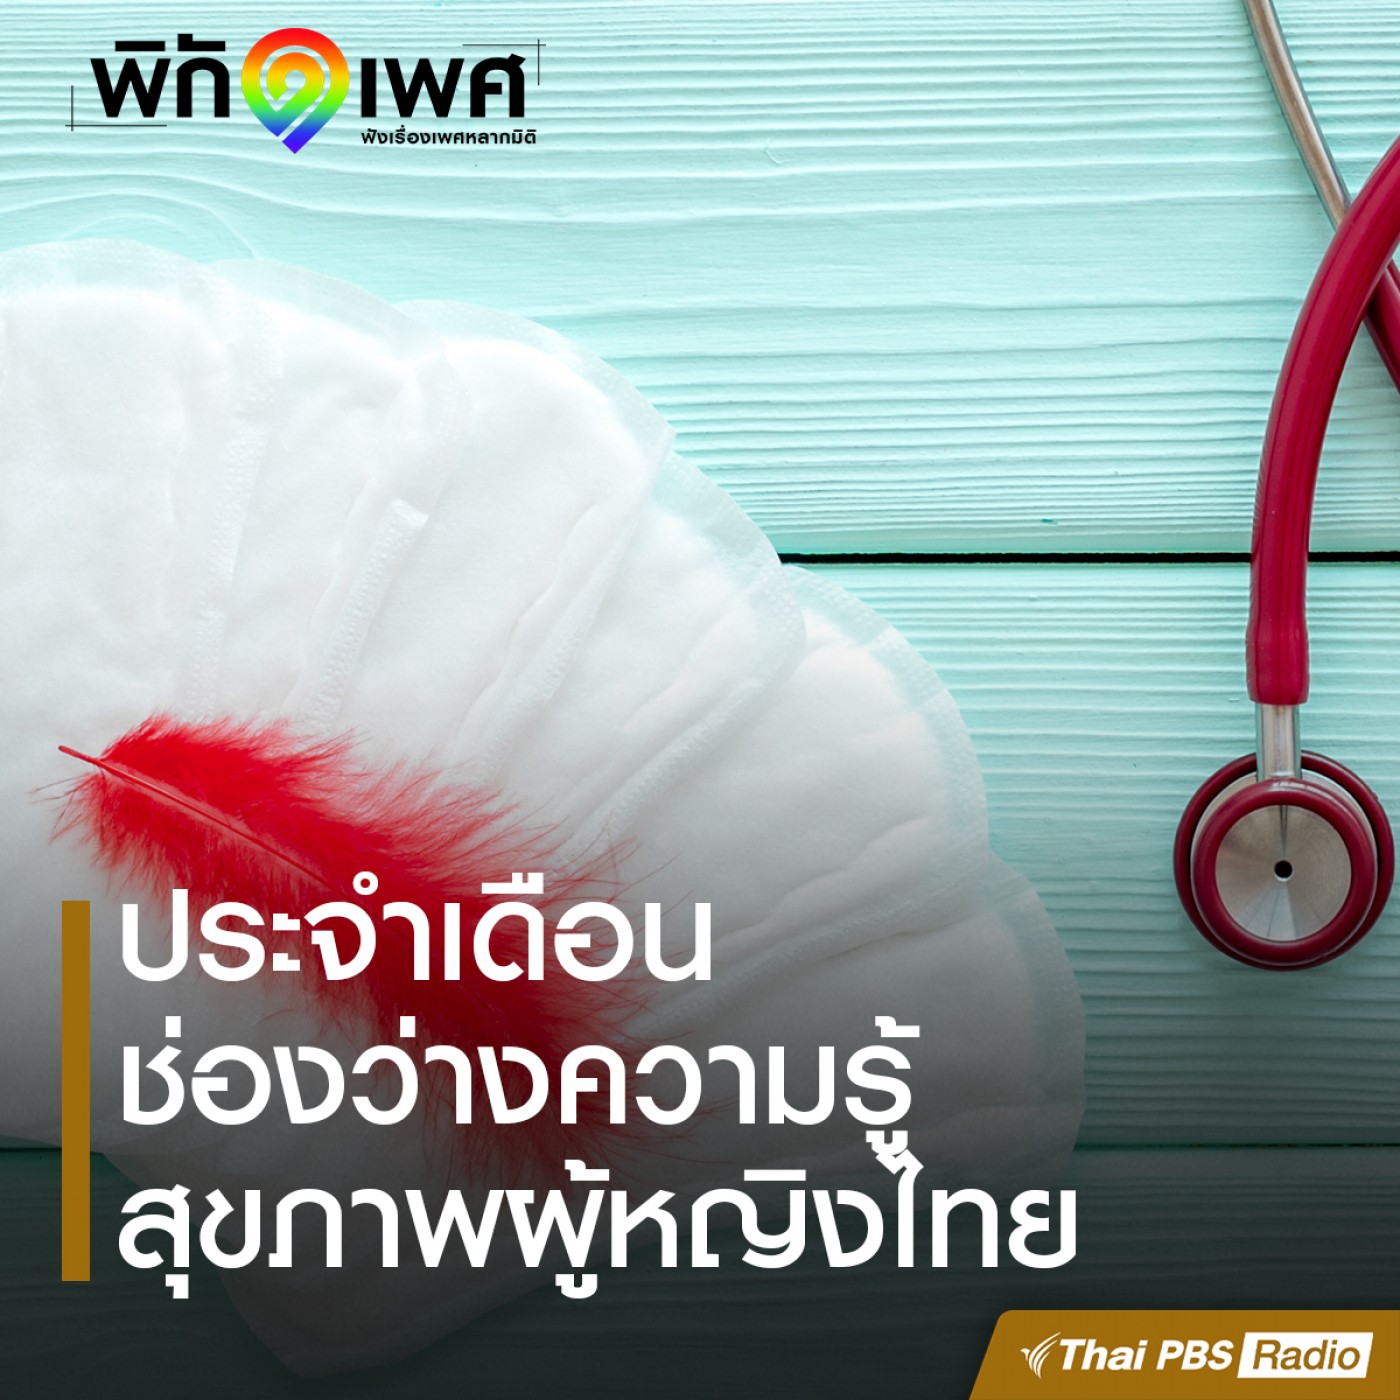 พิกัดเพศ EP. 3: “ประจำเดือน” ช่องว่างความรู้สุขภาพผู้หญิงไทย